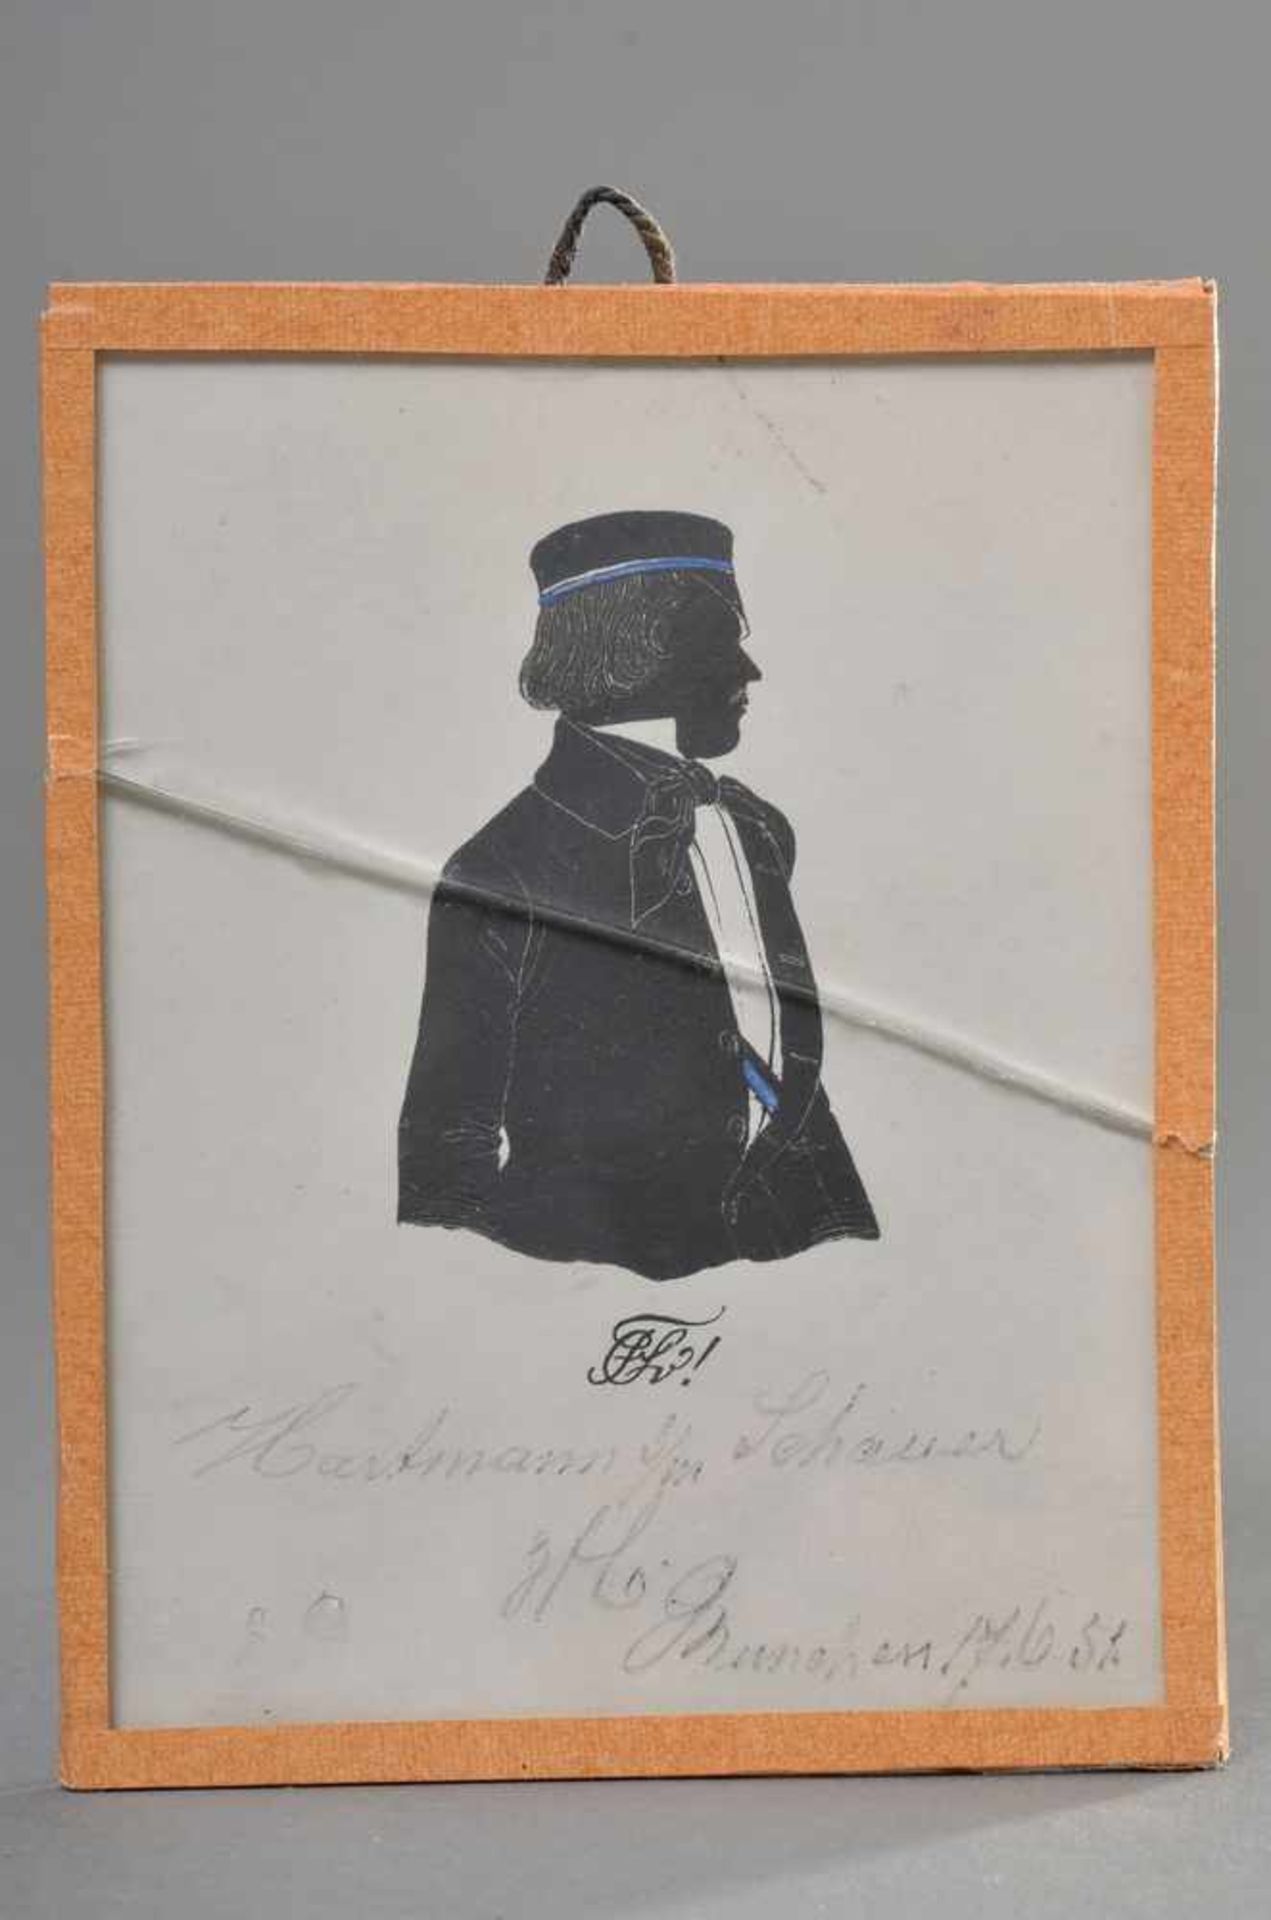 Studenten Silhouette: Hartmann s./l. Schauer, Corps Suevia München, 17.6.1851, in alter Rahmung,